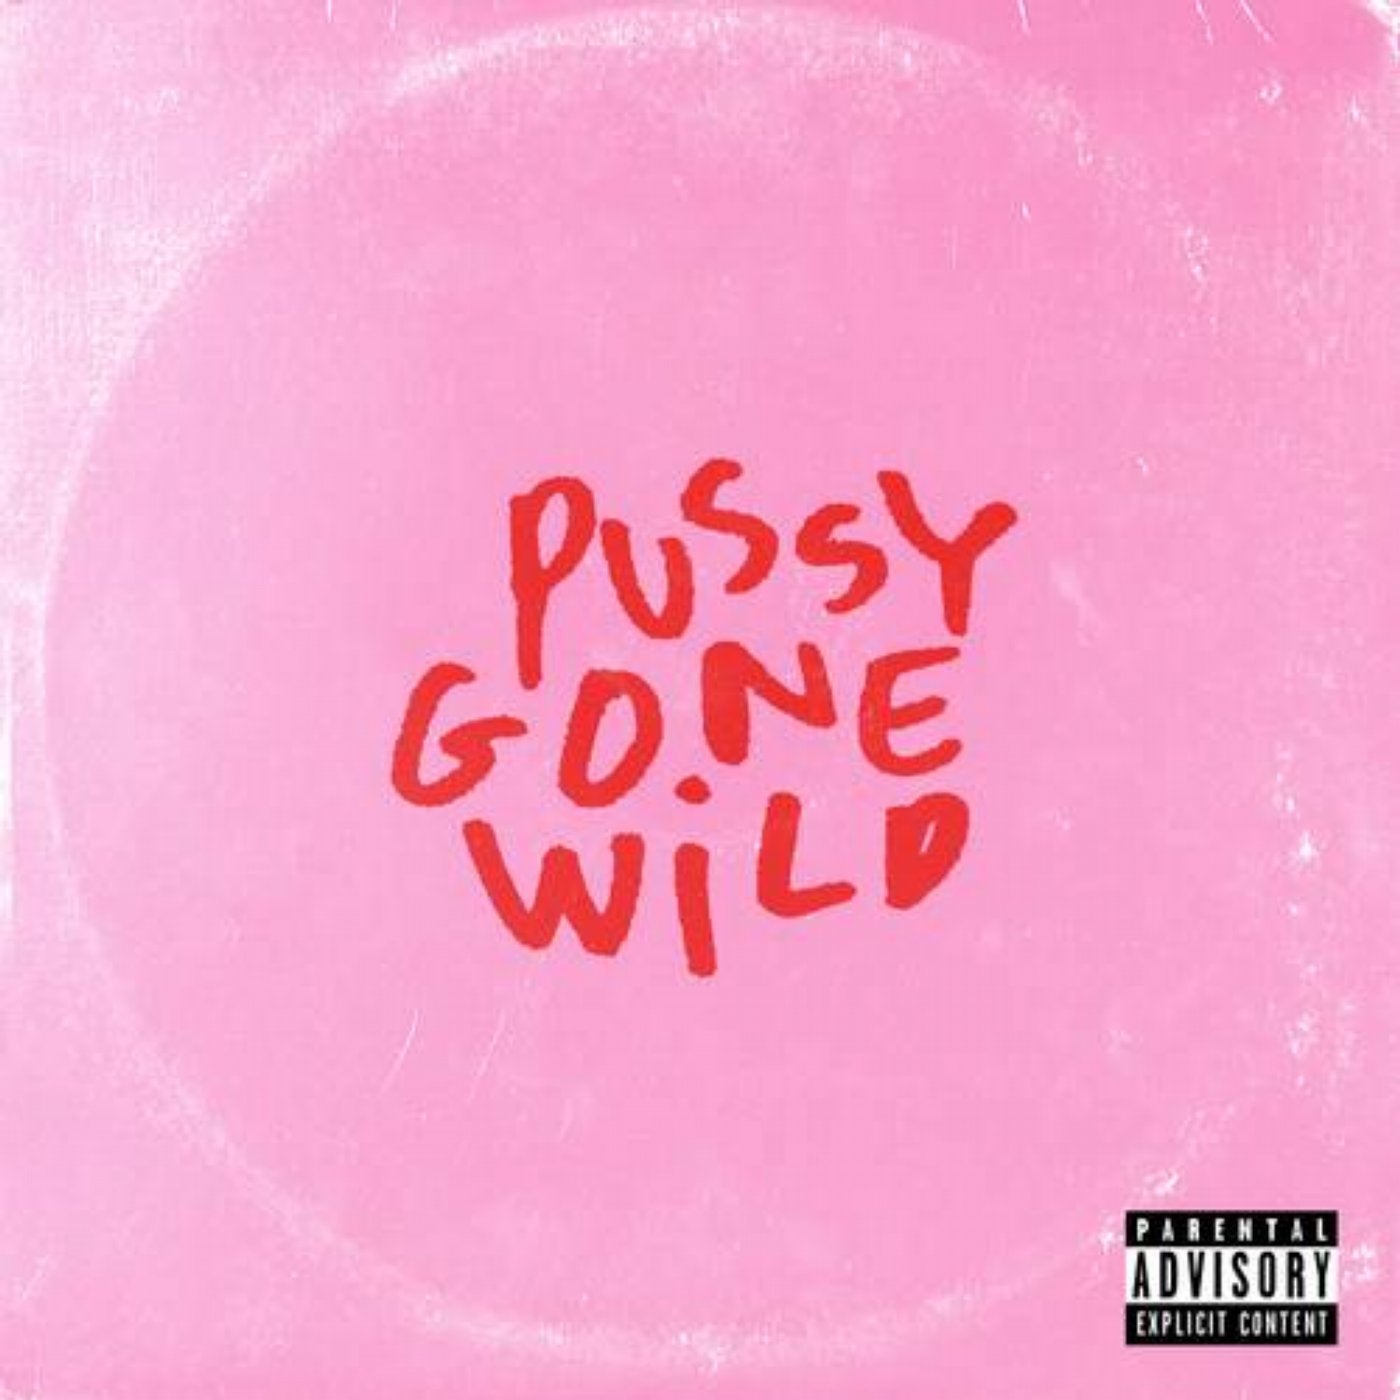 Pussy Gone Wild